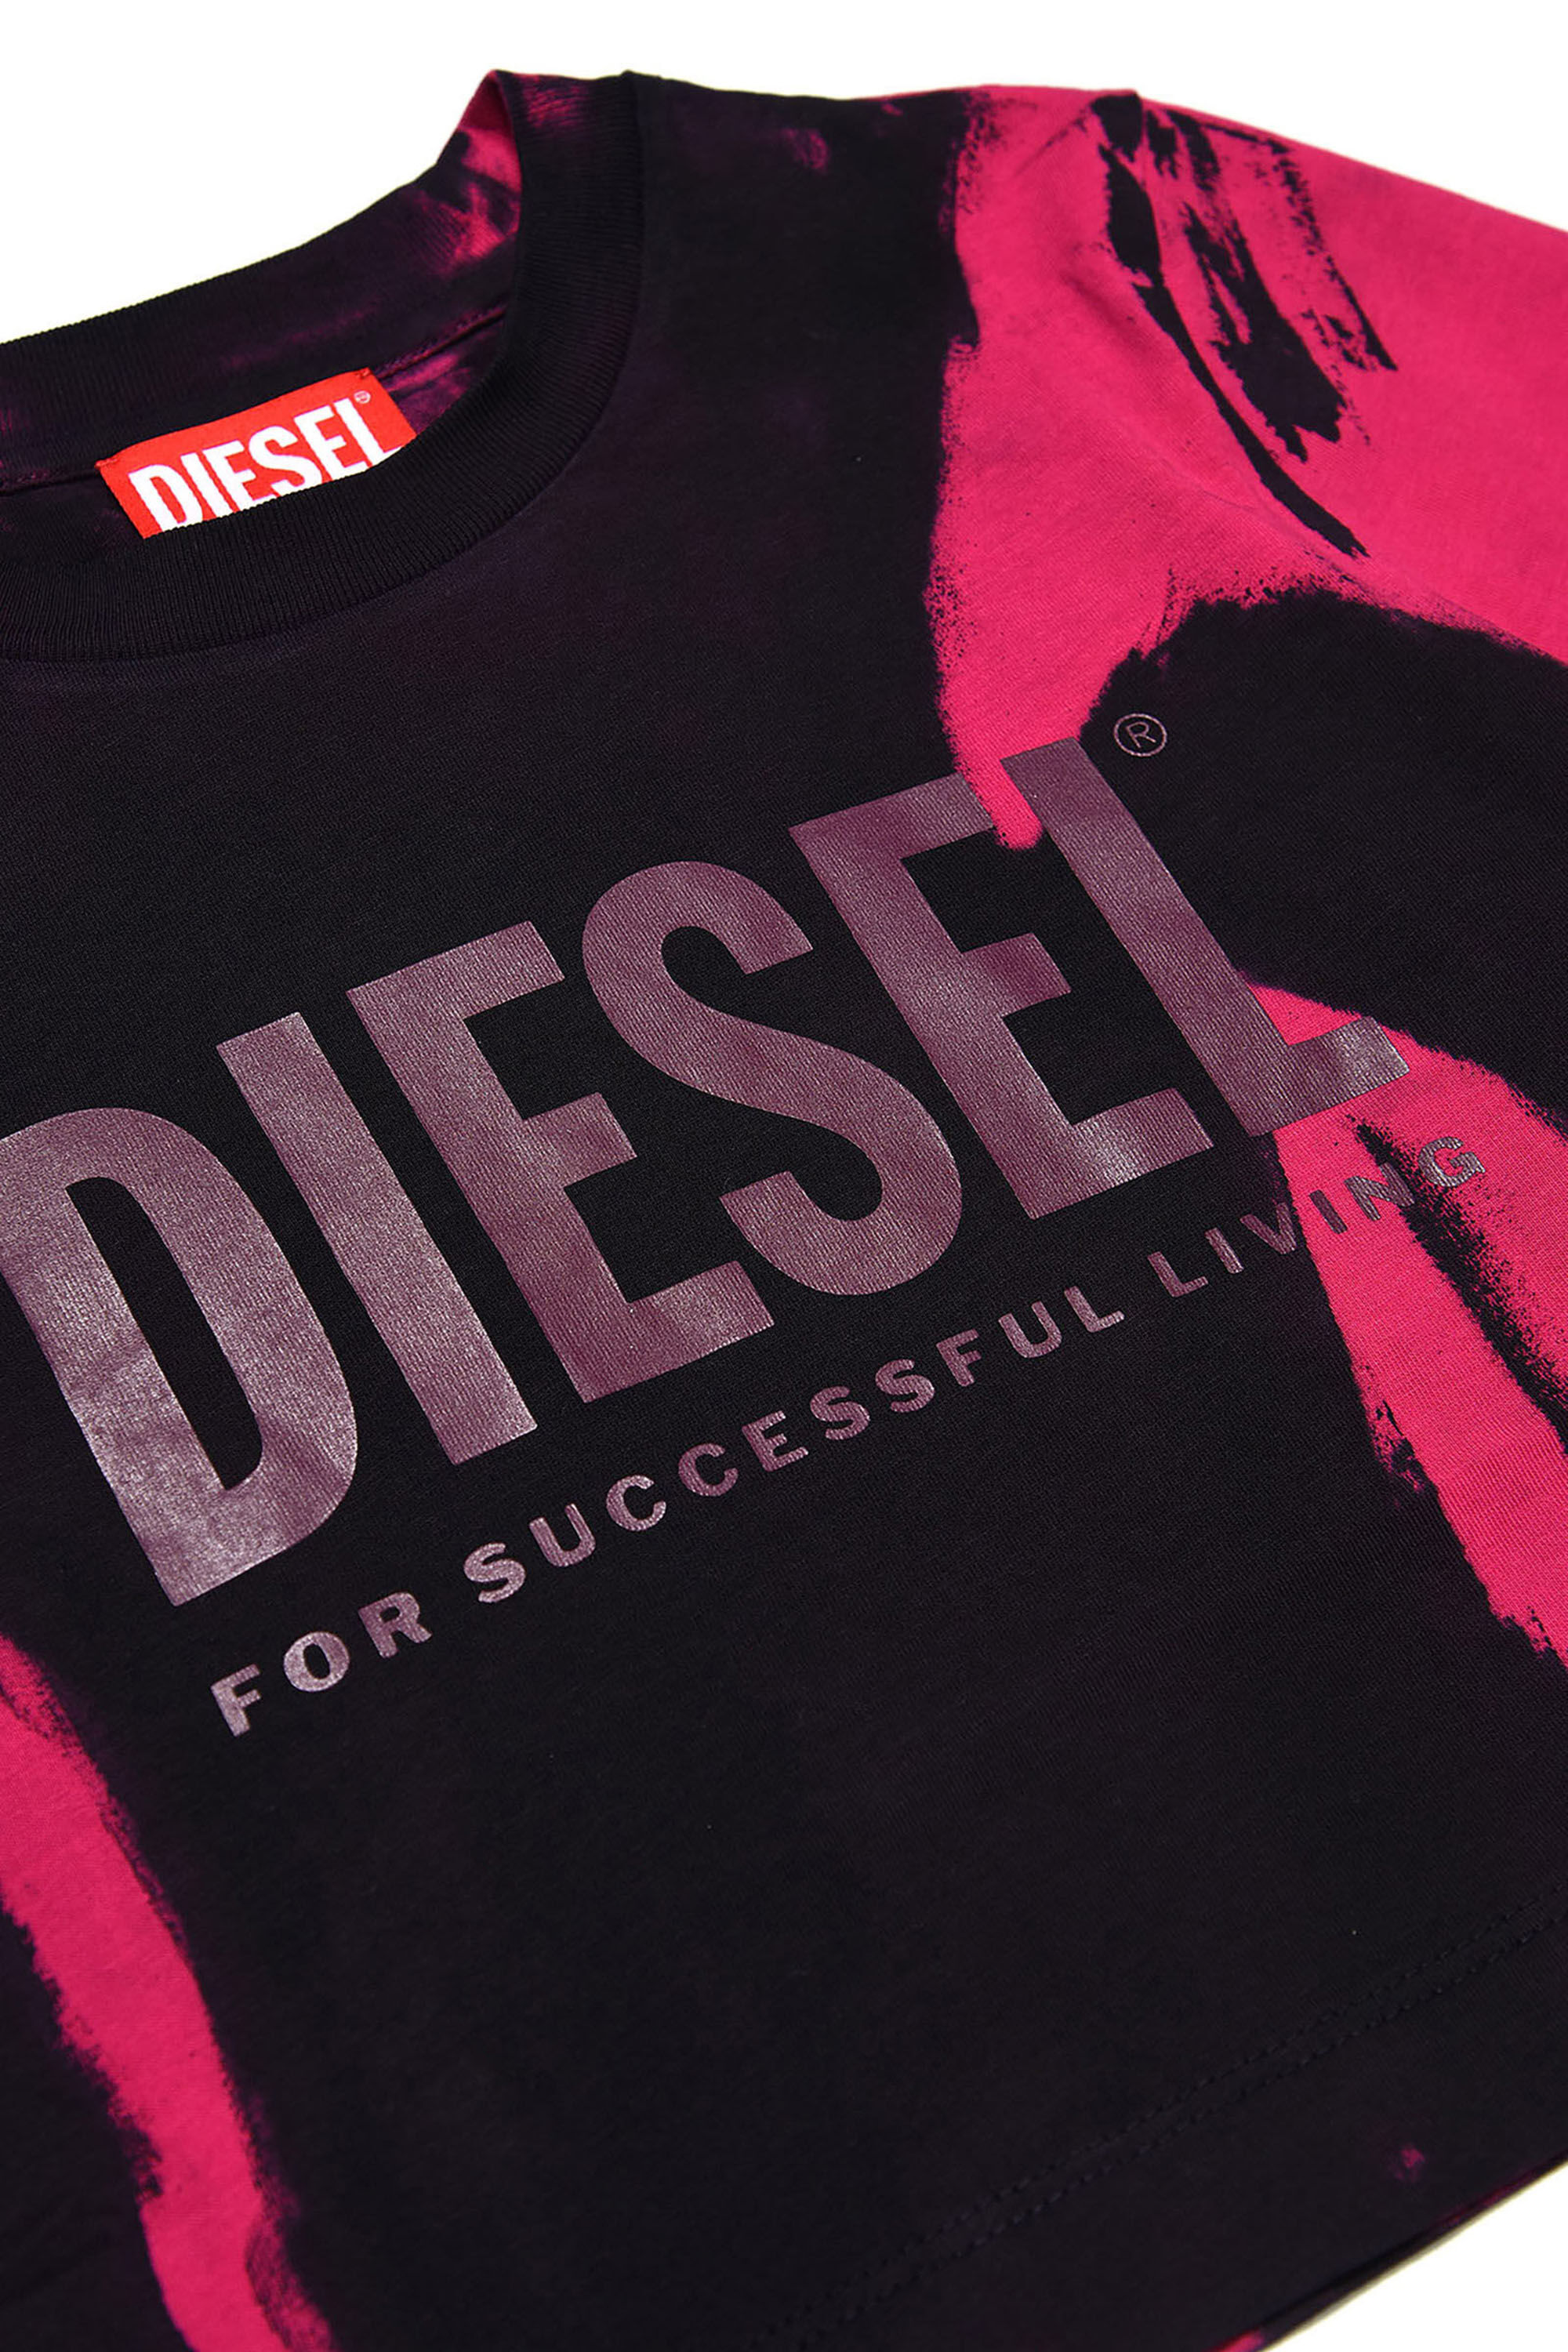 Diesel - TRECROWT&D, Black/Pink - Image 3